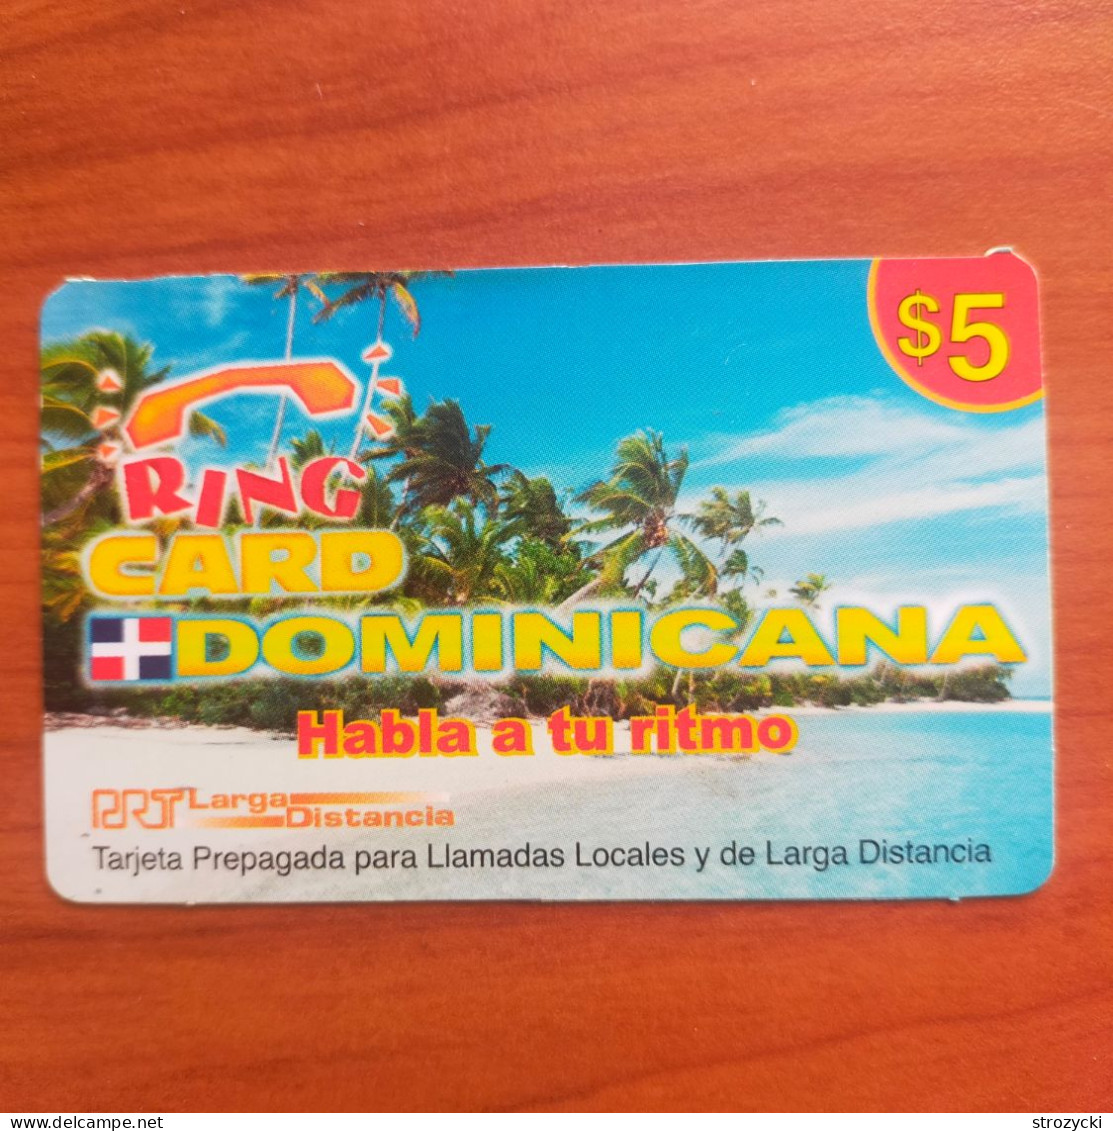 Puerto Rico - PRTC - Ring Card Dominicana - Puerto Rico